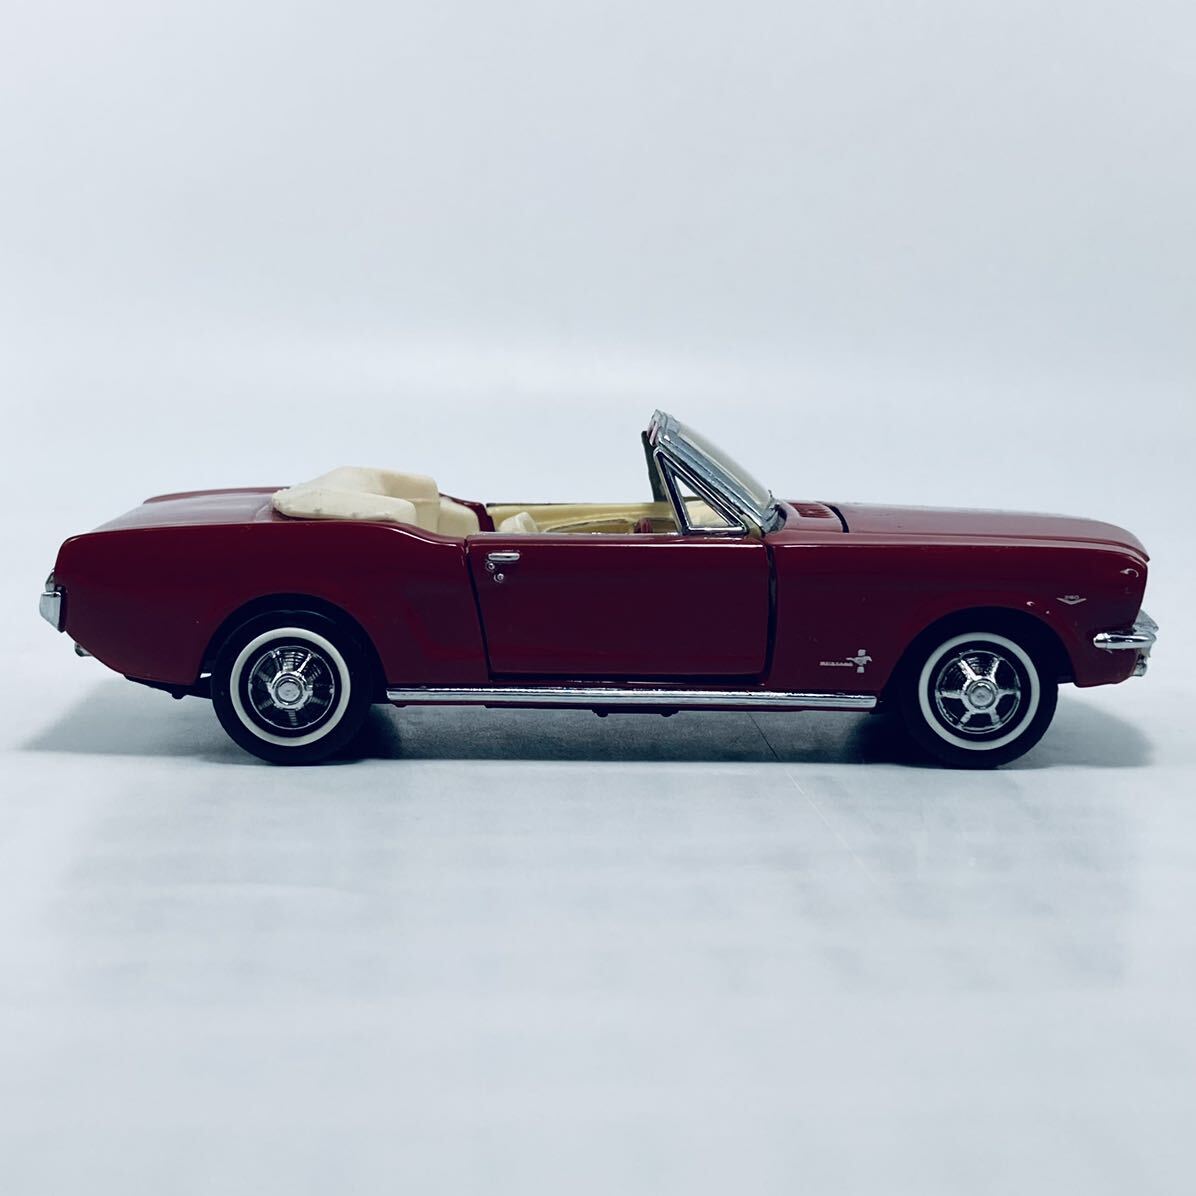  вне без коробки . Vintage предмет Franklin Mint 1/43 FORD MUSTANG CONVERTIBLE RED Mustang с откидным верхом красный 